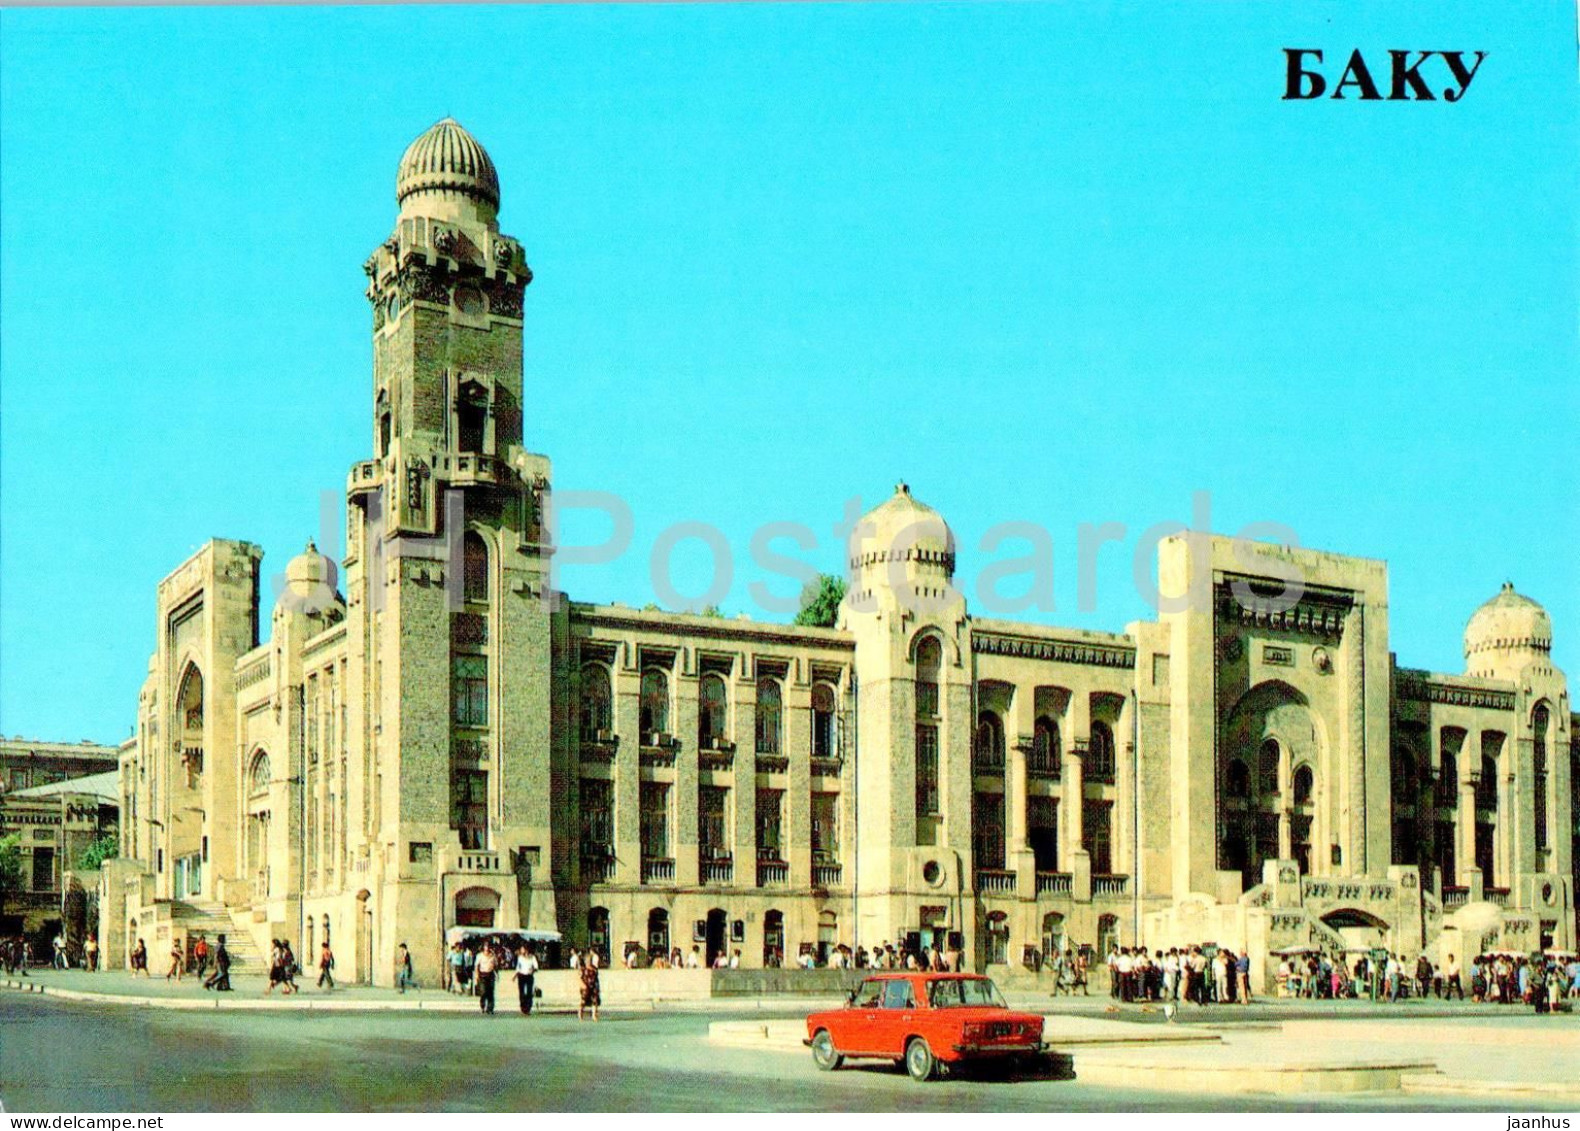 Baku - Old Railway Station - Car Zhiguli - 1985 - Azerbaijan USSR - Unused - Azerbaigian